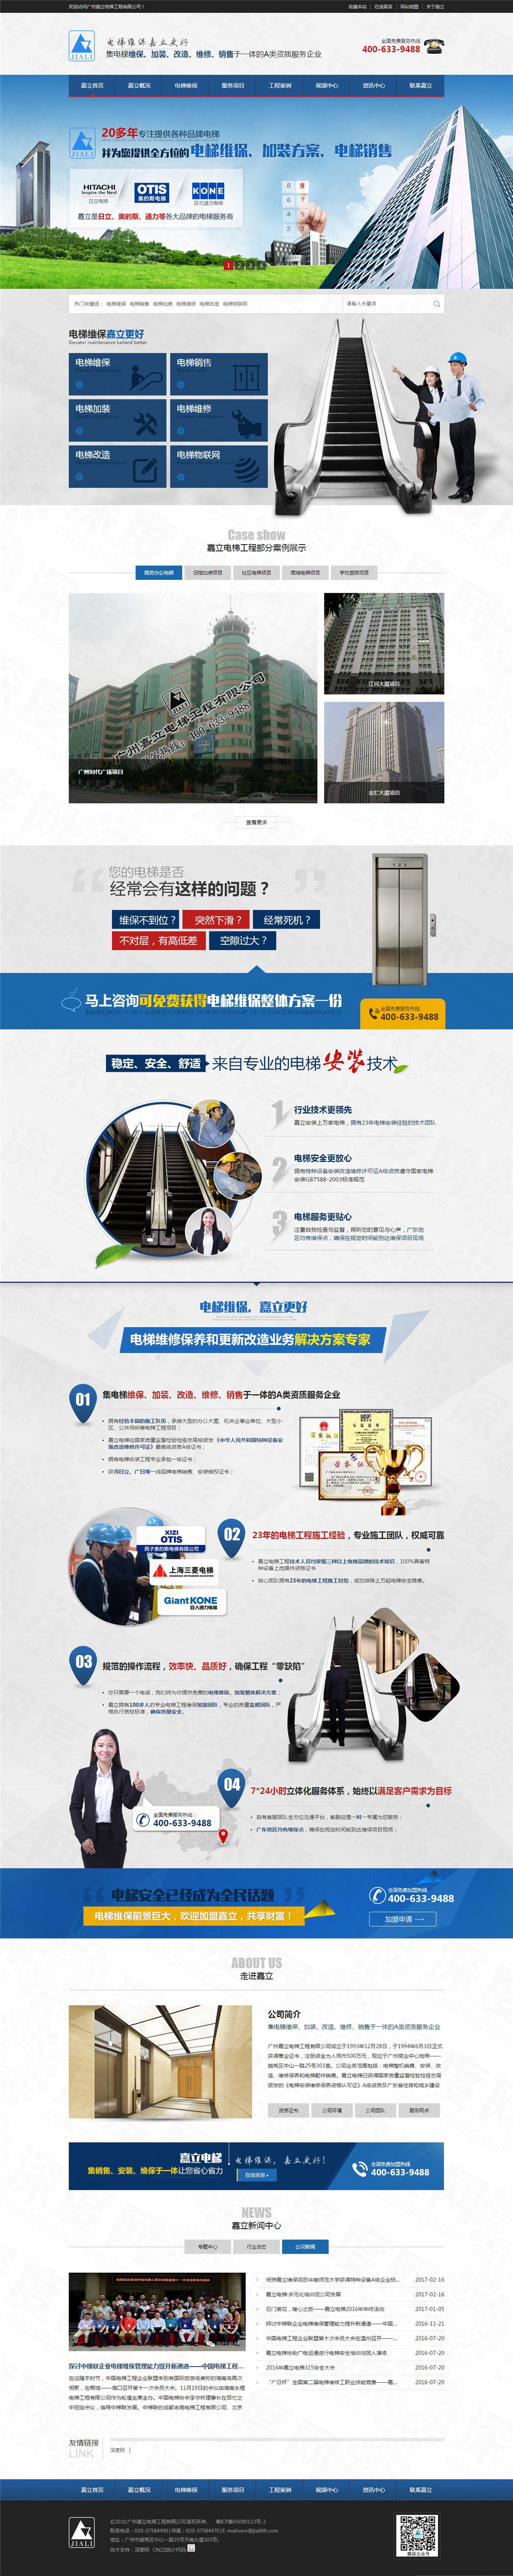 广州嘉立电梯工程营销型网站案例